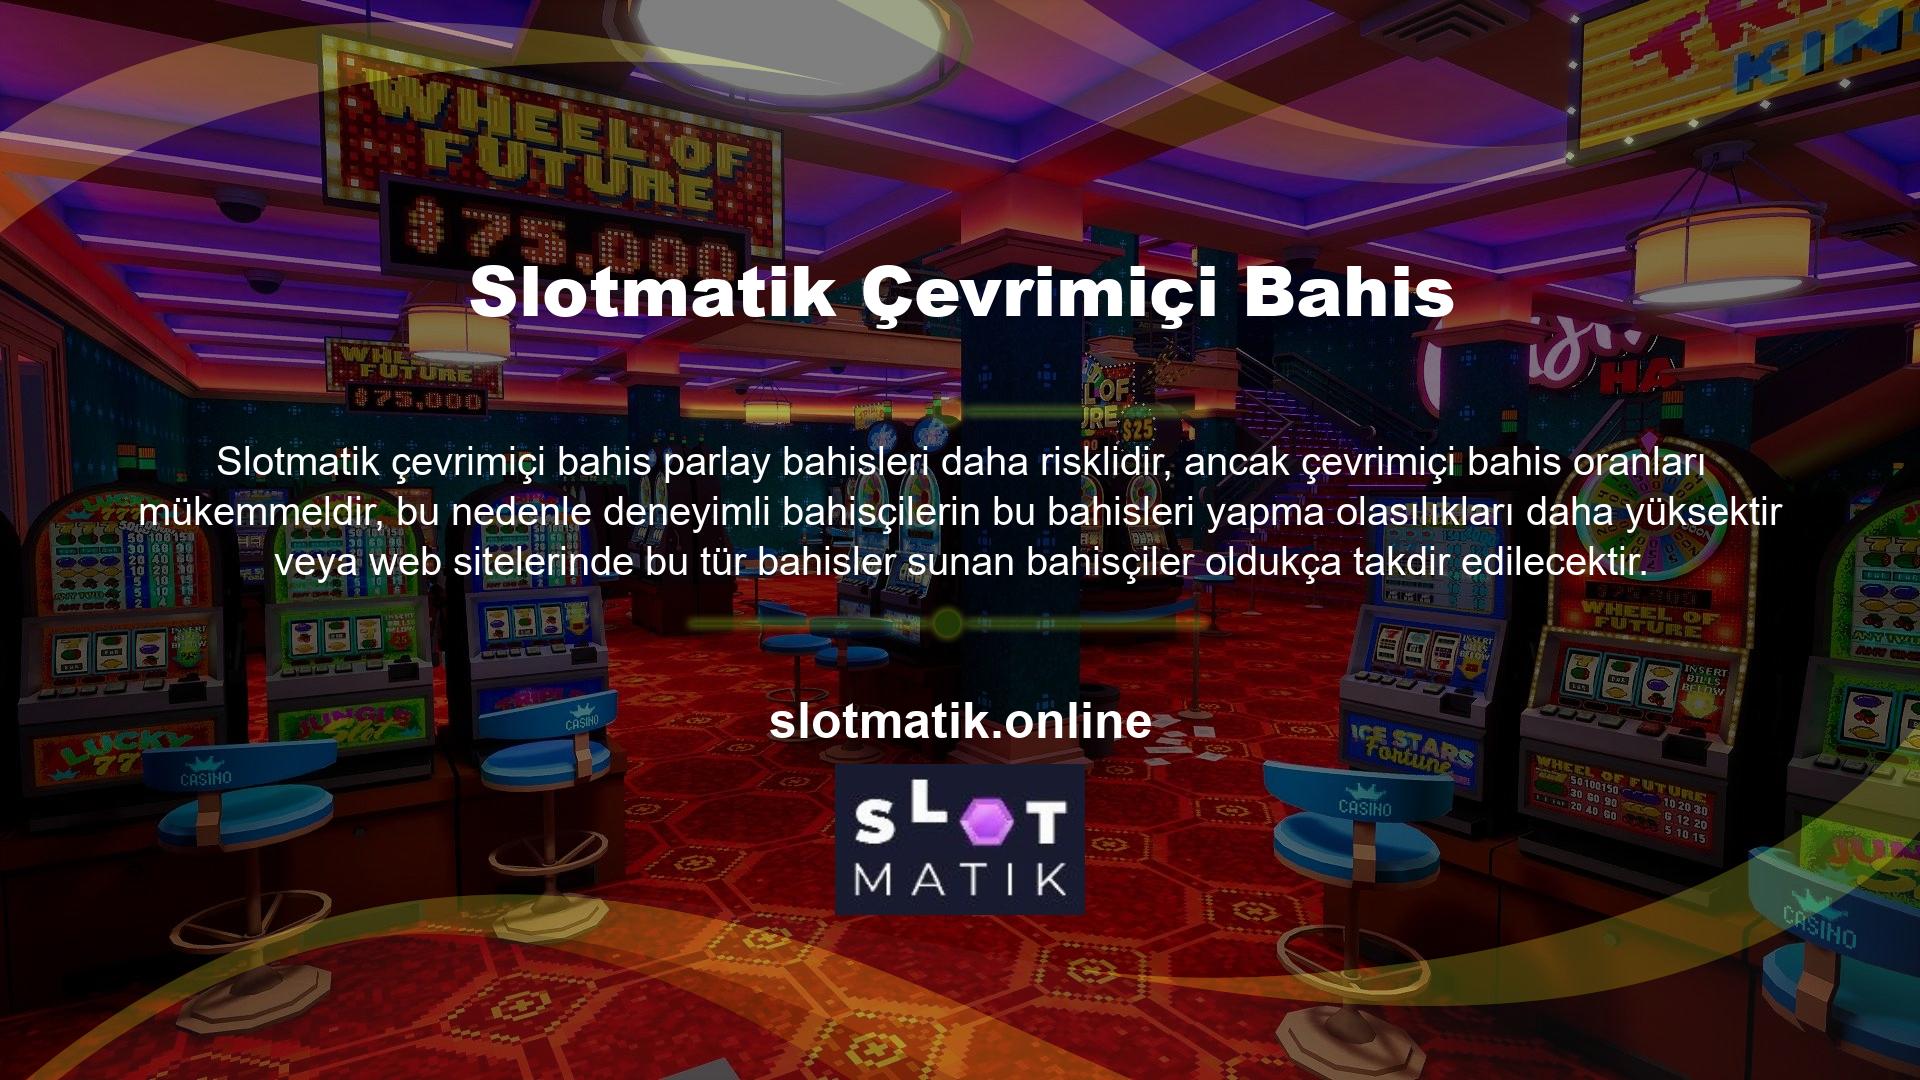 Slotmatik, birçok bahis oynayabileceğiniz bir web sitesidir